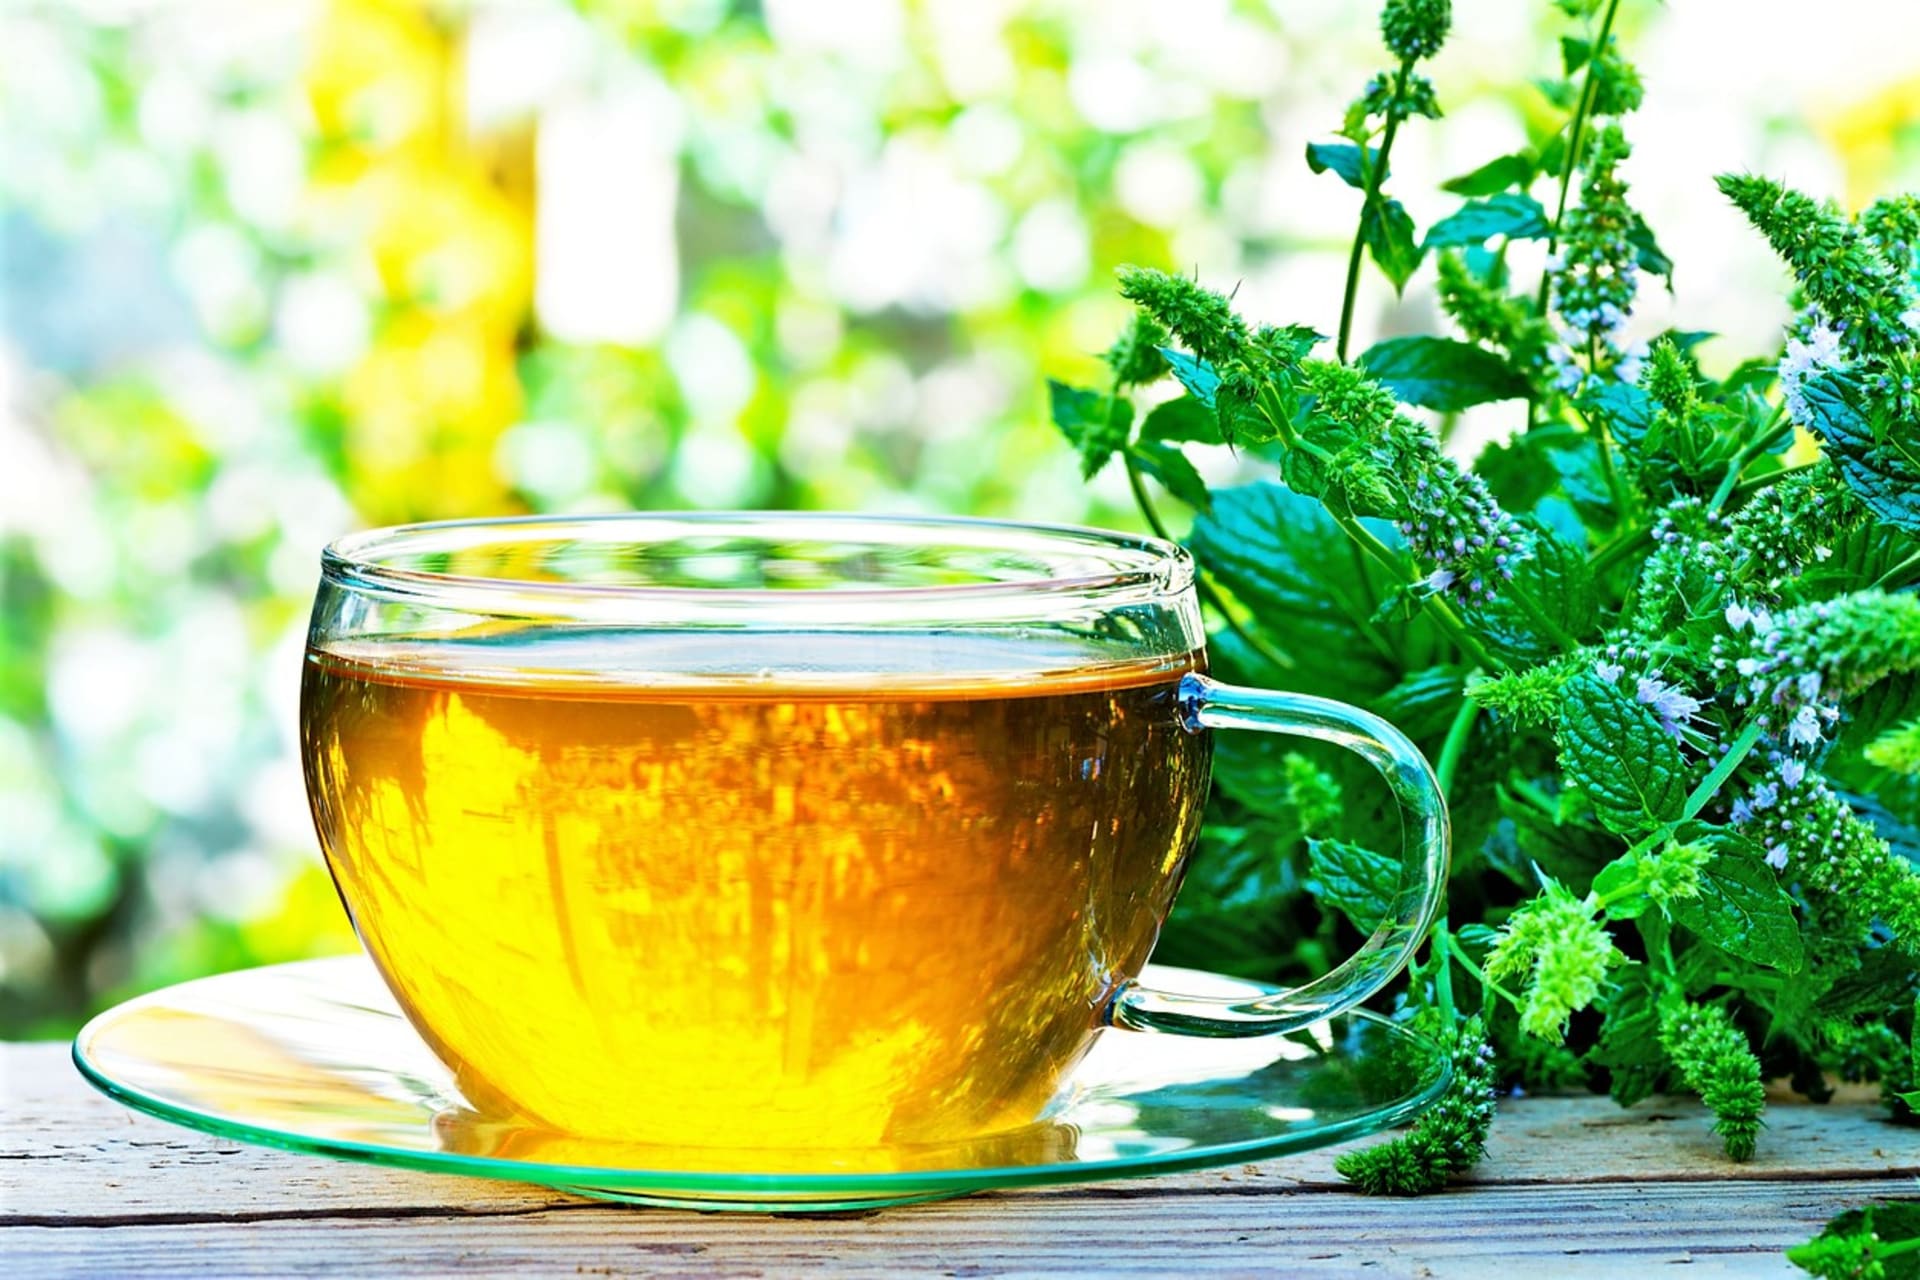 Mátový čaj můžeme pít teplý, vlažný nebo studený. Jako zdravotní bylinkový čaj je nejlepší ho pít jen tak, nijak ho neochucovat.